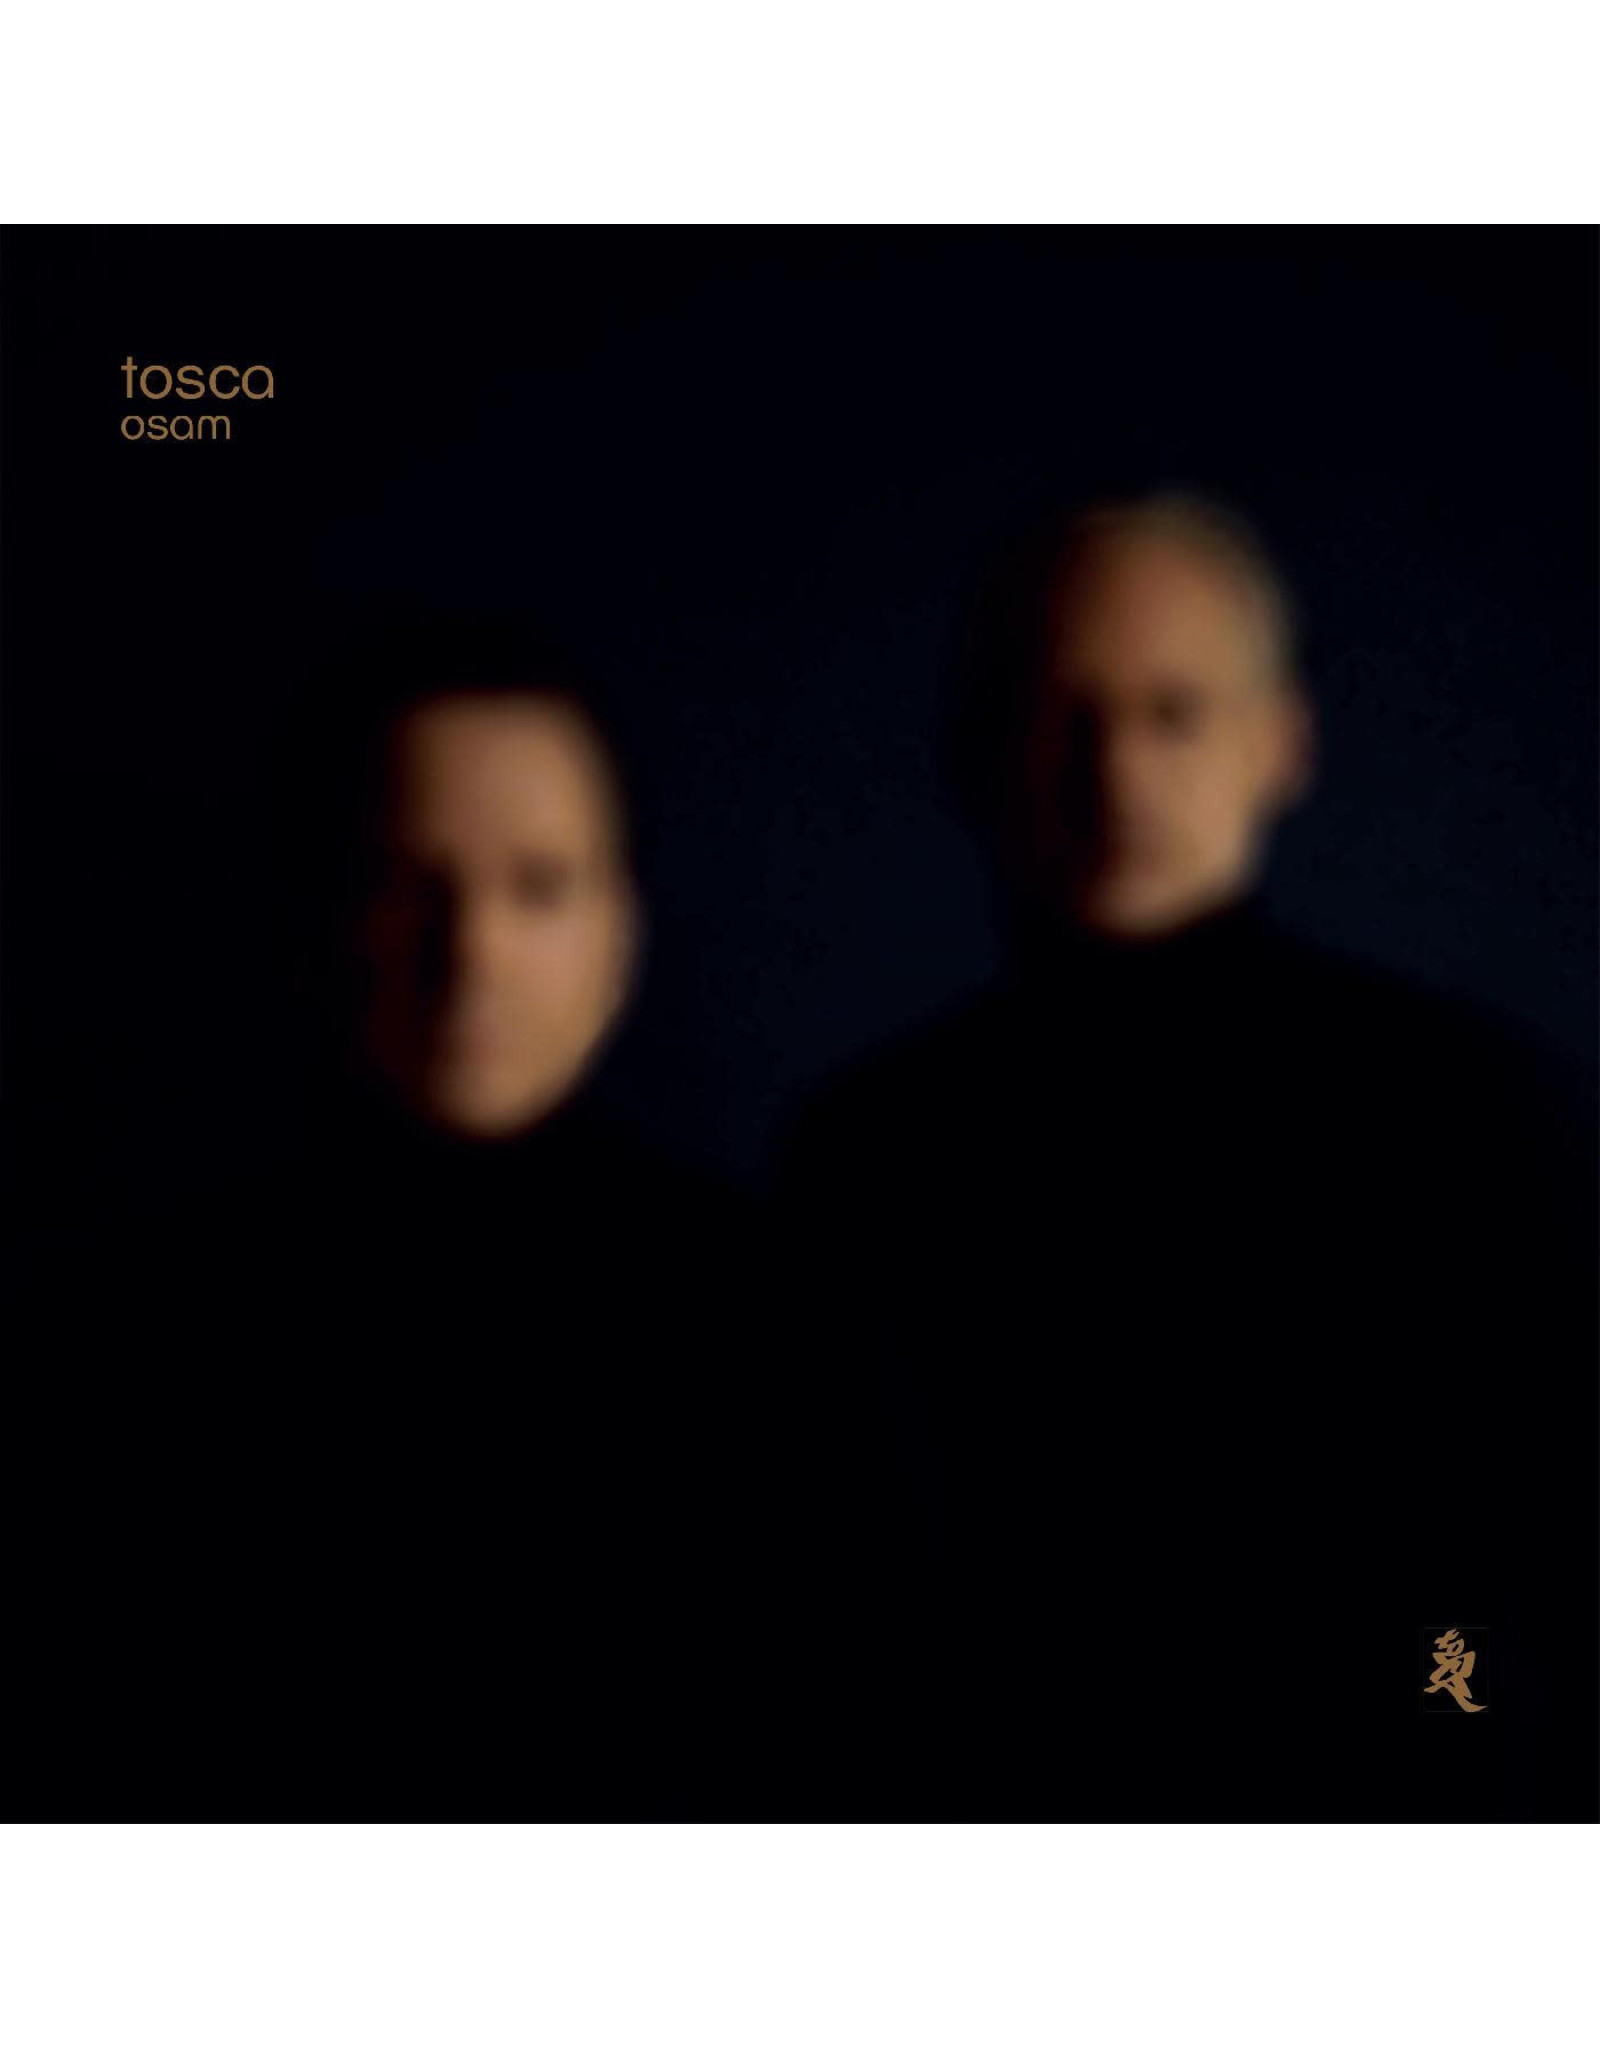 New Vinyl Tosca - Osam (140g) 2LP